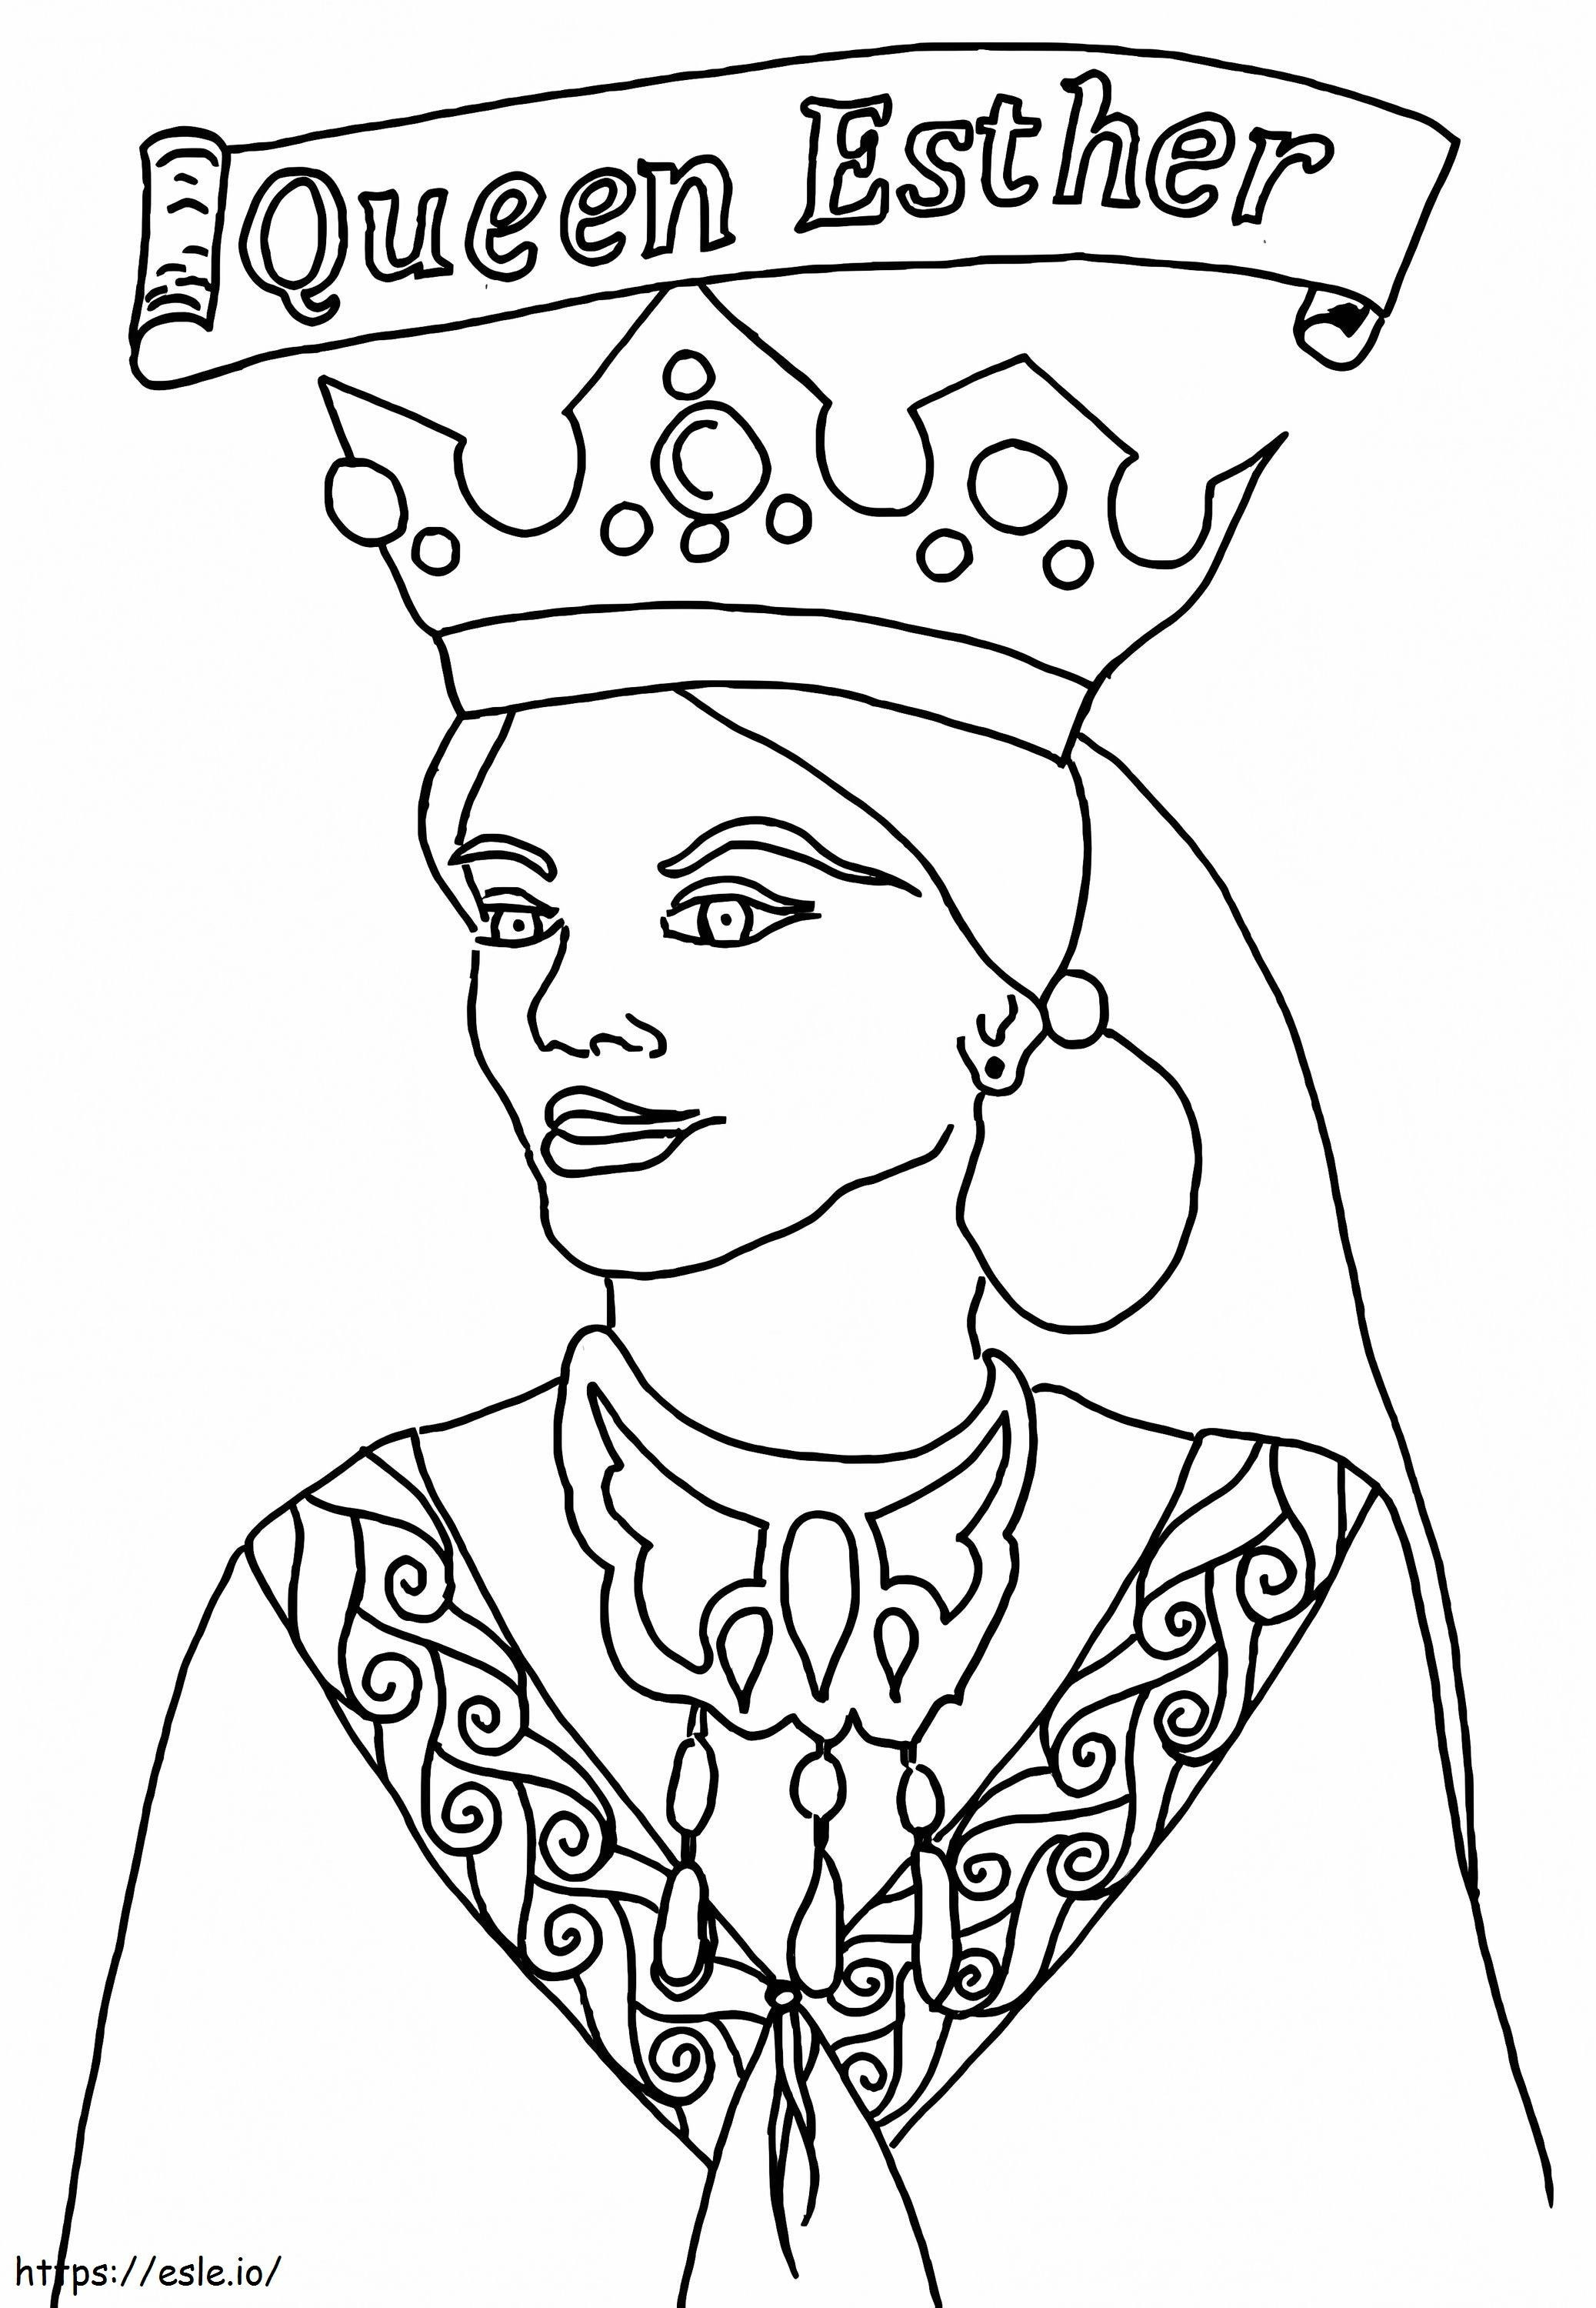 Szabad Eszter királynő kifestő